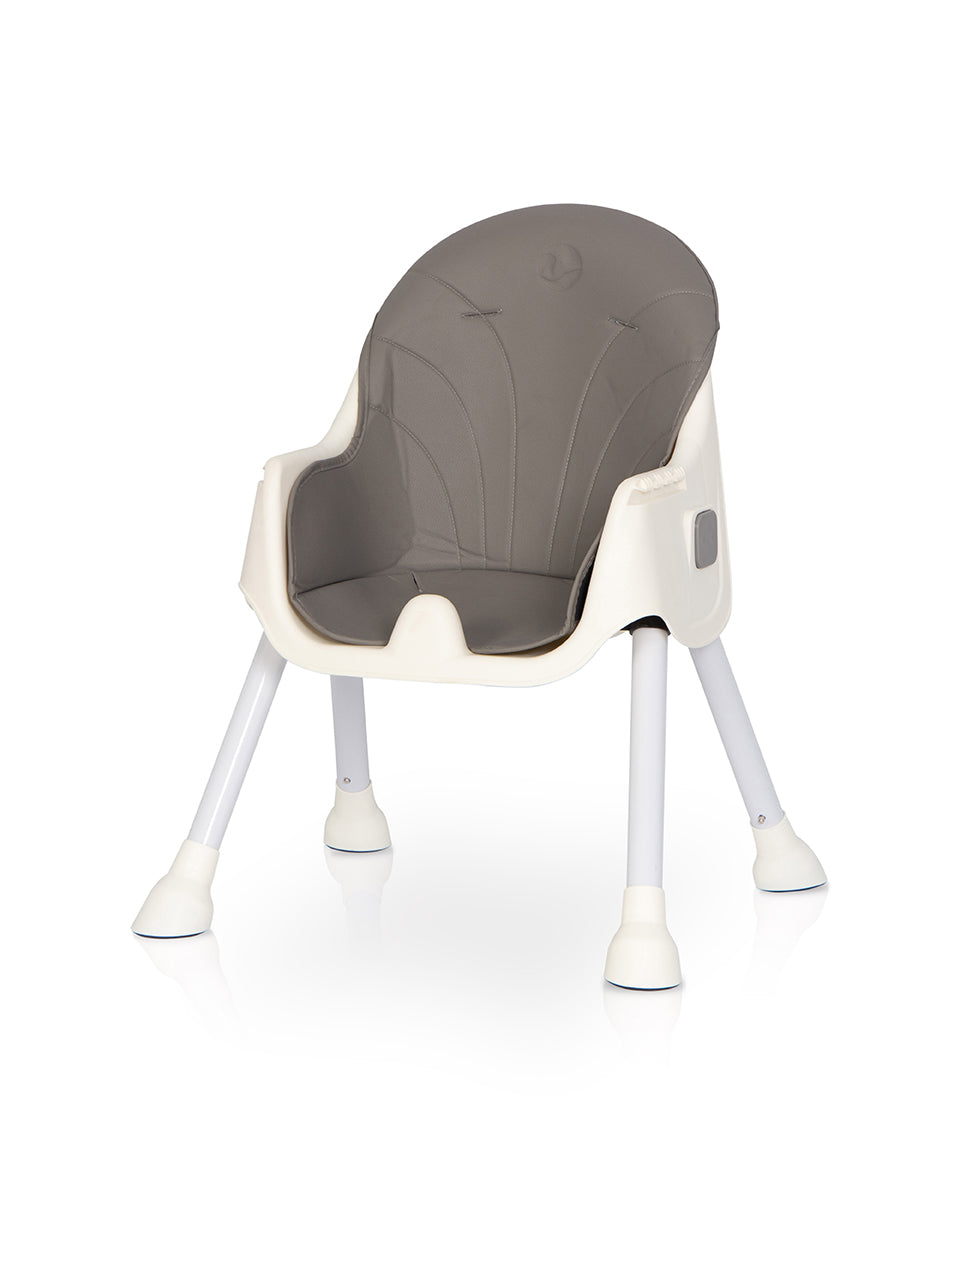 Colibro PICOLO High Chair 4in1 | Dove - Hula Hula Baby